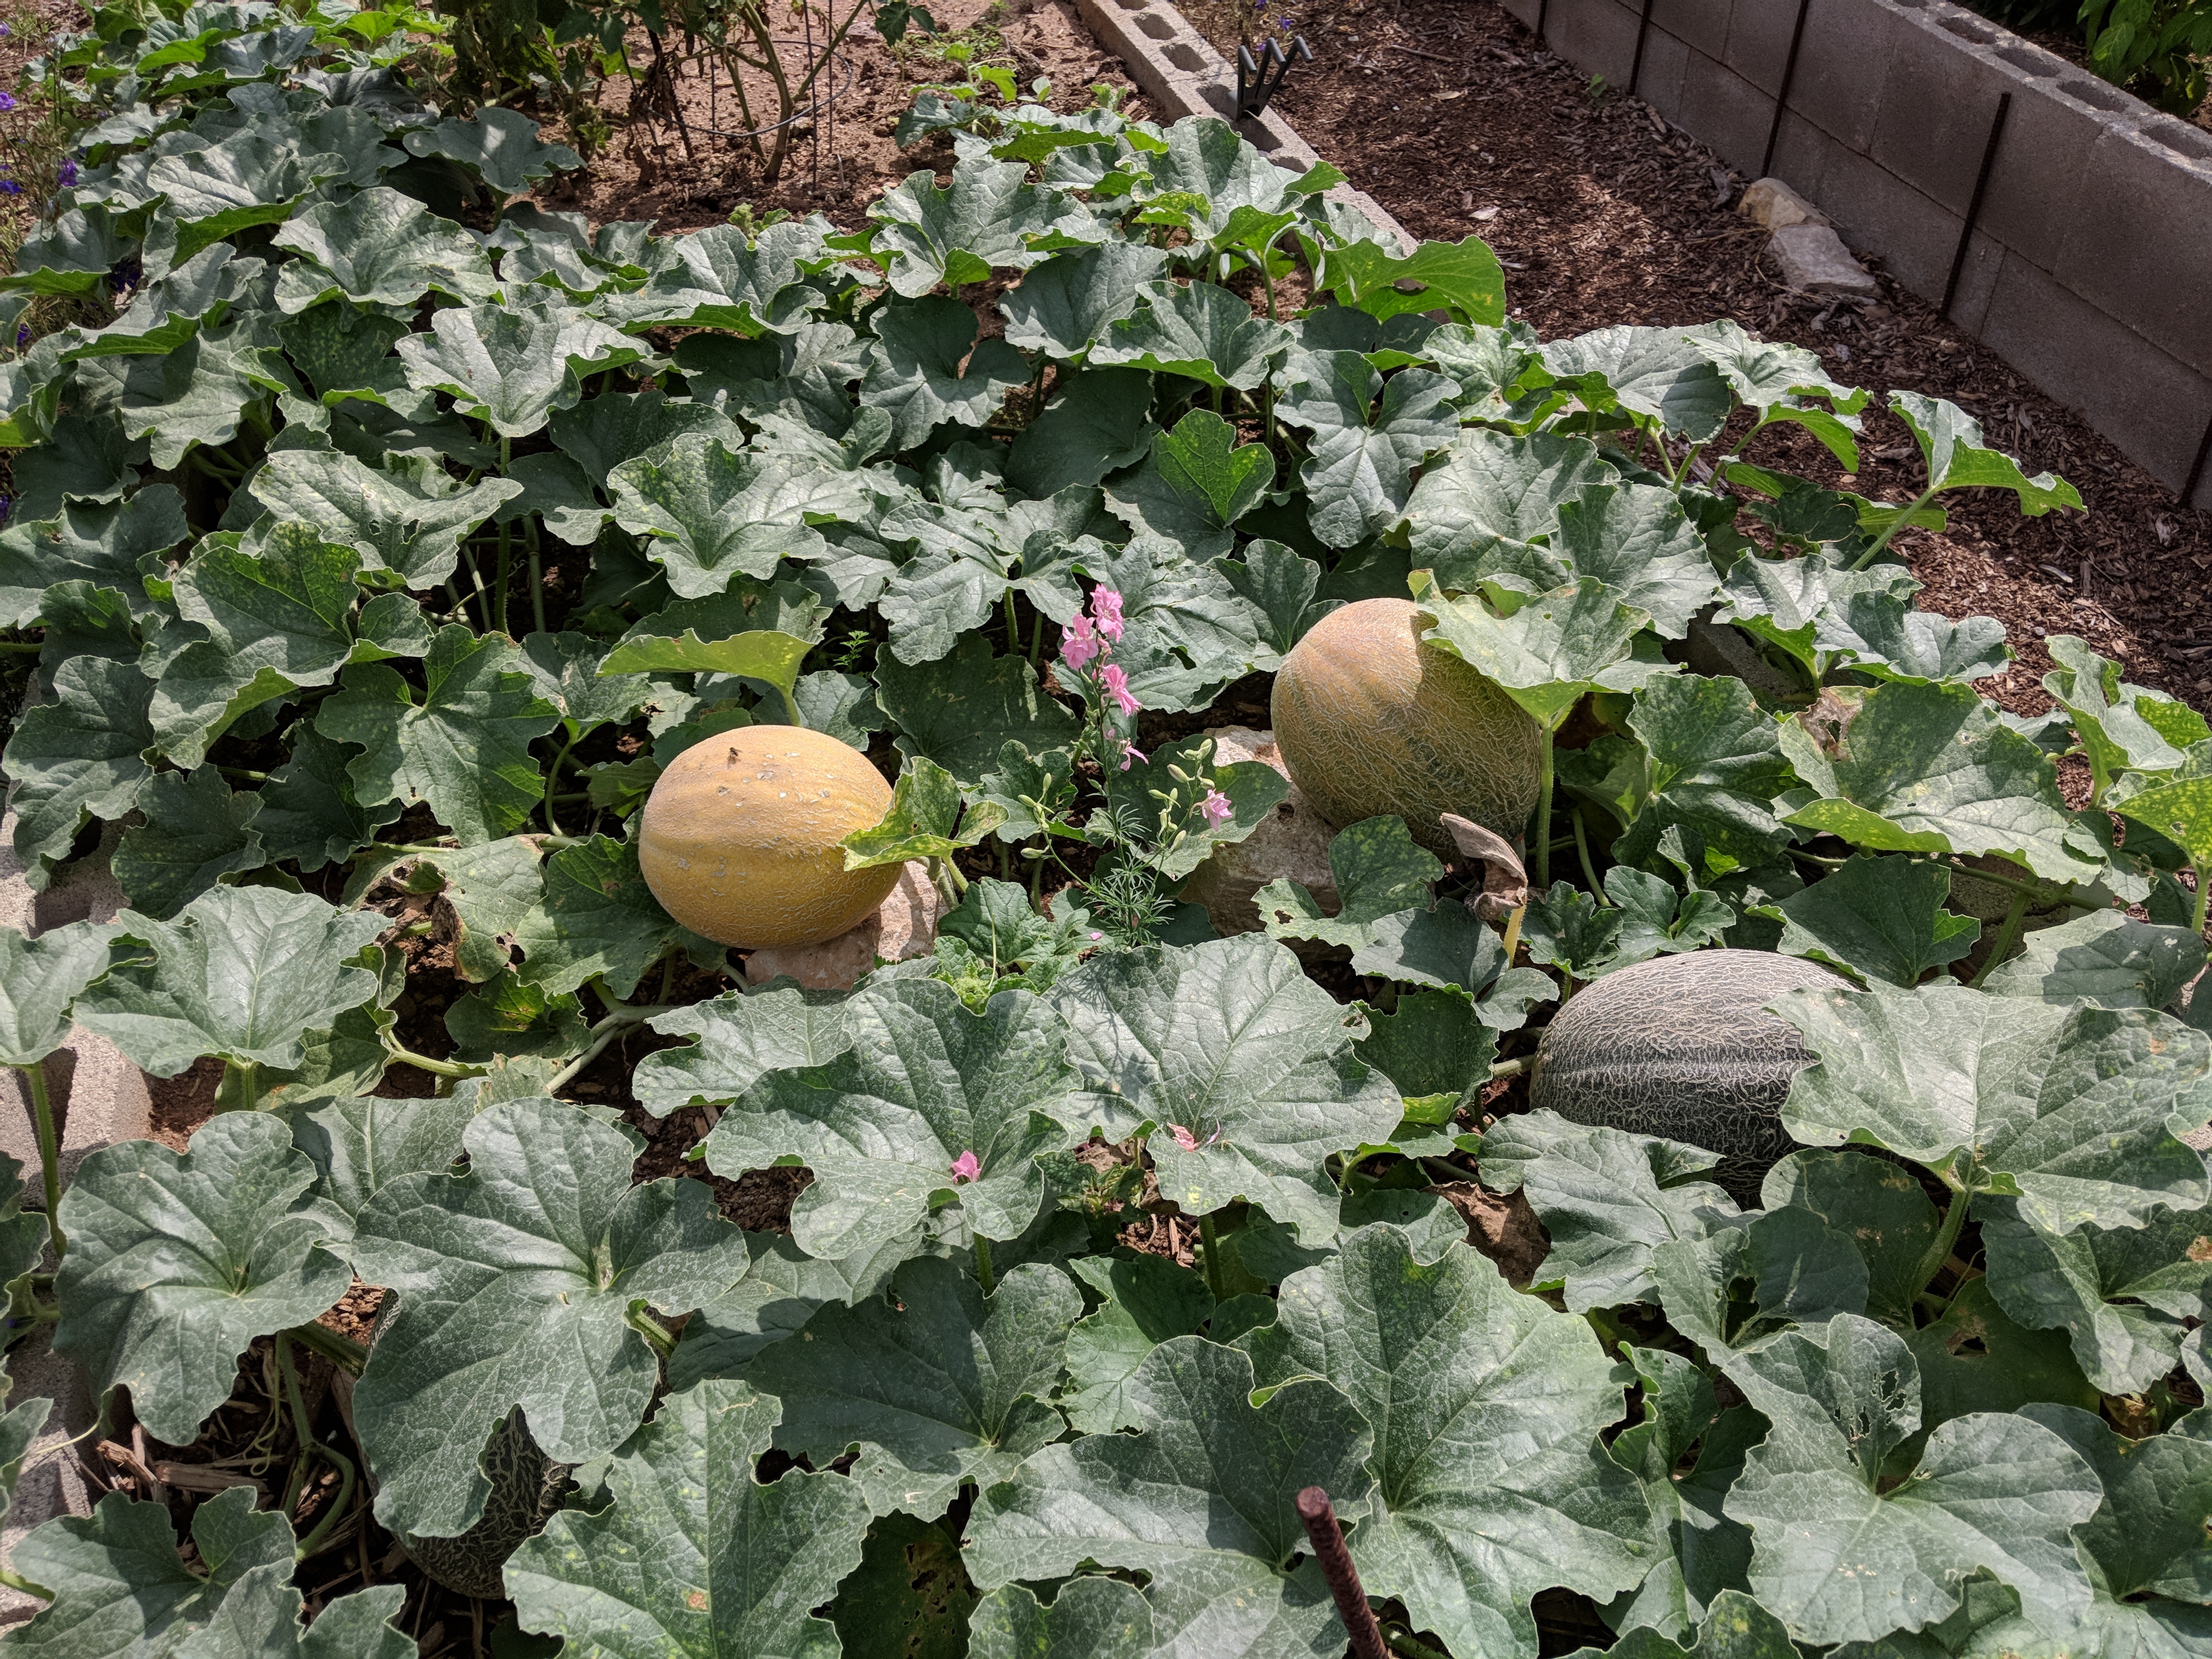 Cantaloupe in the Garden